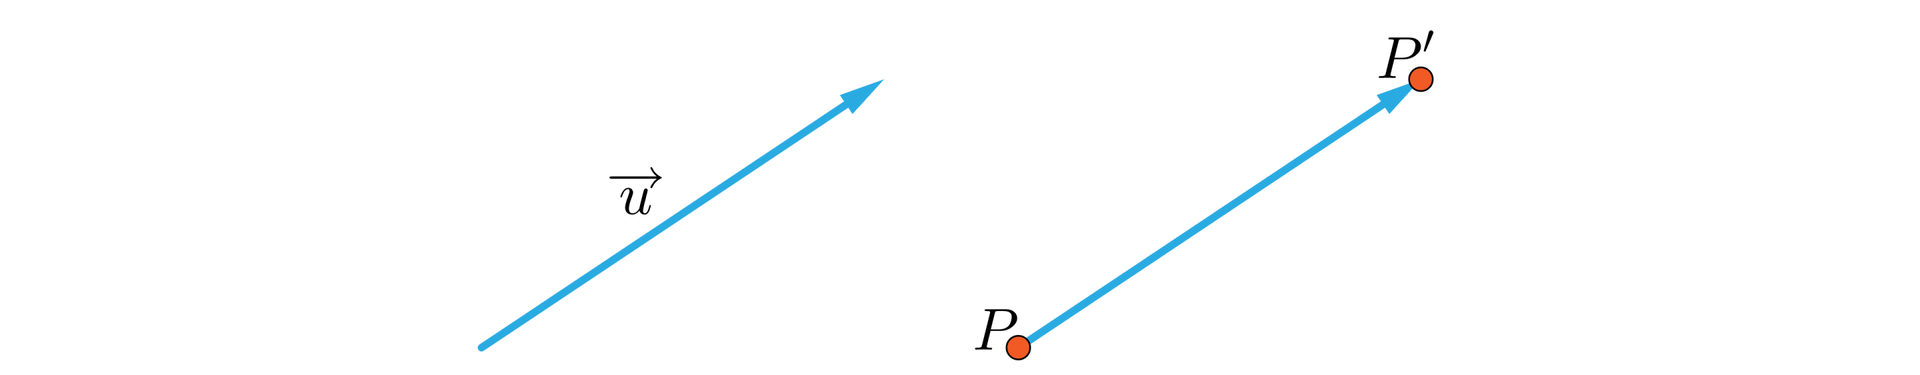 Grafika przedstawia wektor oraz punkt przesunięty o ten wektor. Po prawej stronie grafiki znajduje się u→. Po lewej stronie znajduje się ten sam wektor, lecz na początku tego wektora znajduje się punkt  P a na końcu punkt P prim.